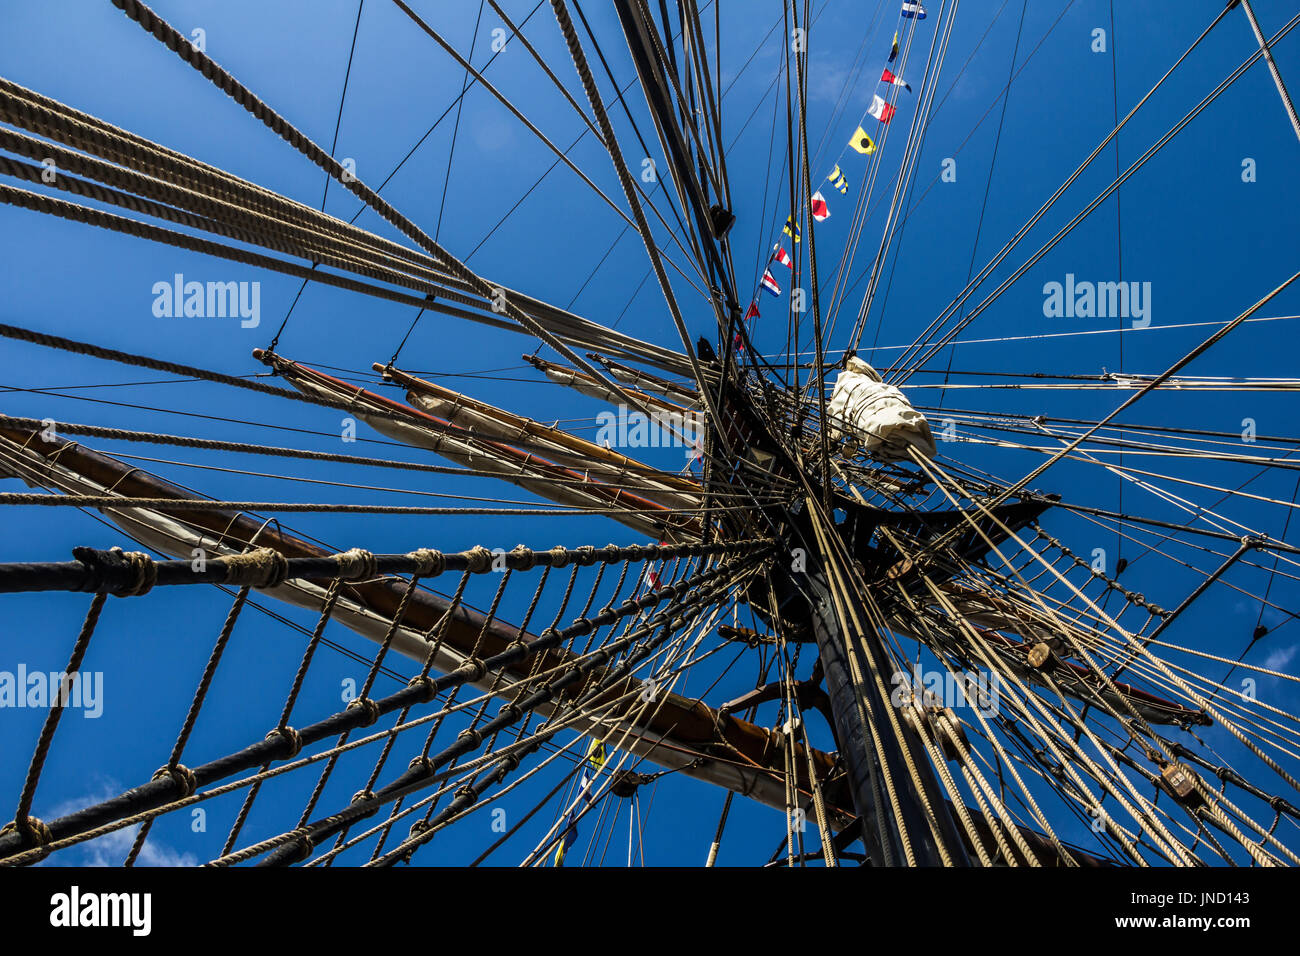 Parte náutica de un yate o un velero grande y antigua con cuerdas, jarcia, velas, mástiles, nudos, banderas de señales delante de un cielo azul Foto de stock